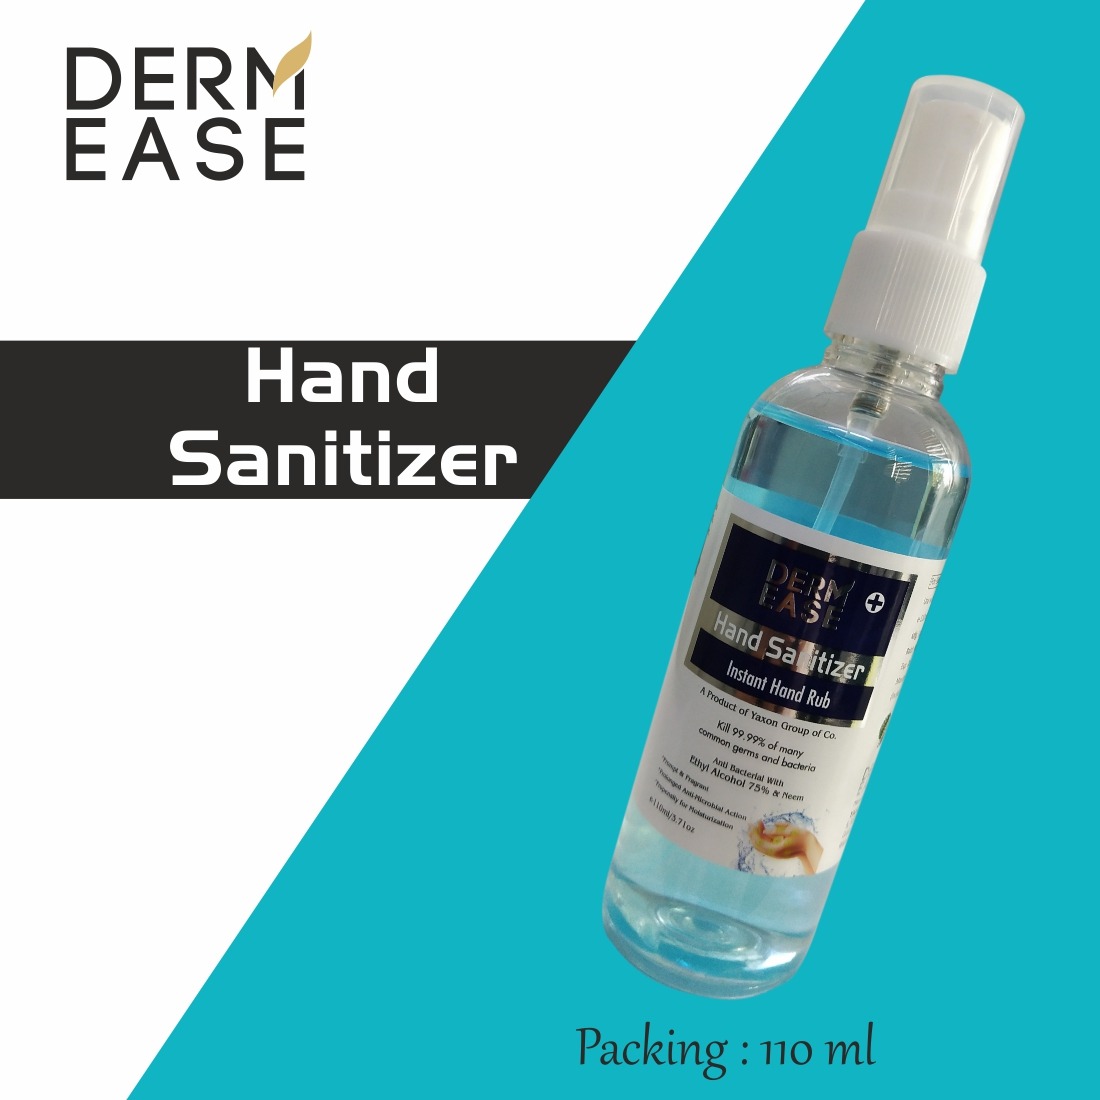 DERM EASE MIST PUMP SPRAY Hand Sanitizer 3 Bottle Pack